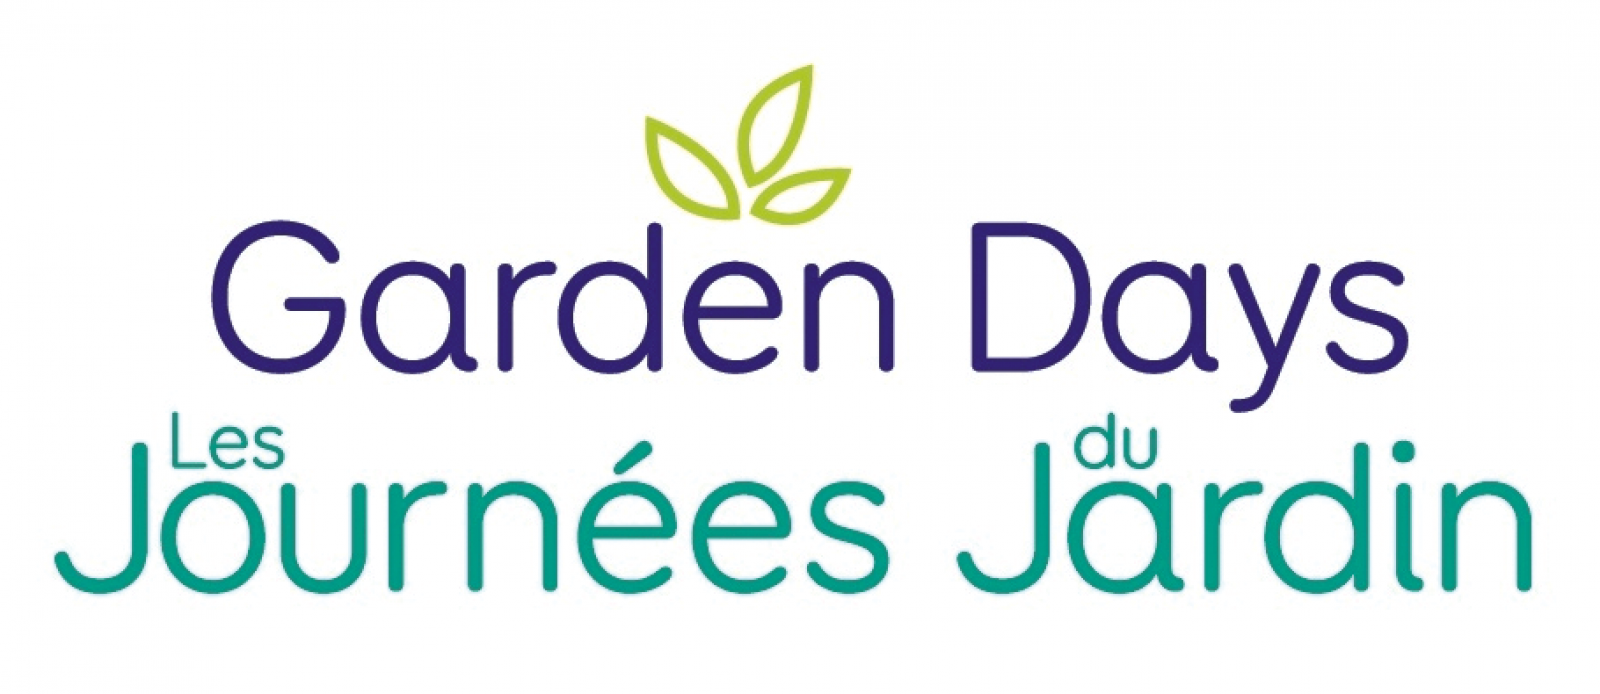 Garden Days celebrations set for June 9-18, 2017